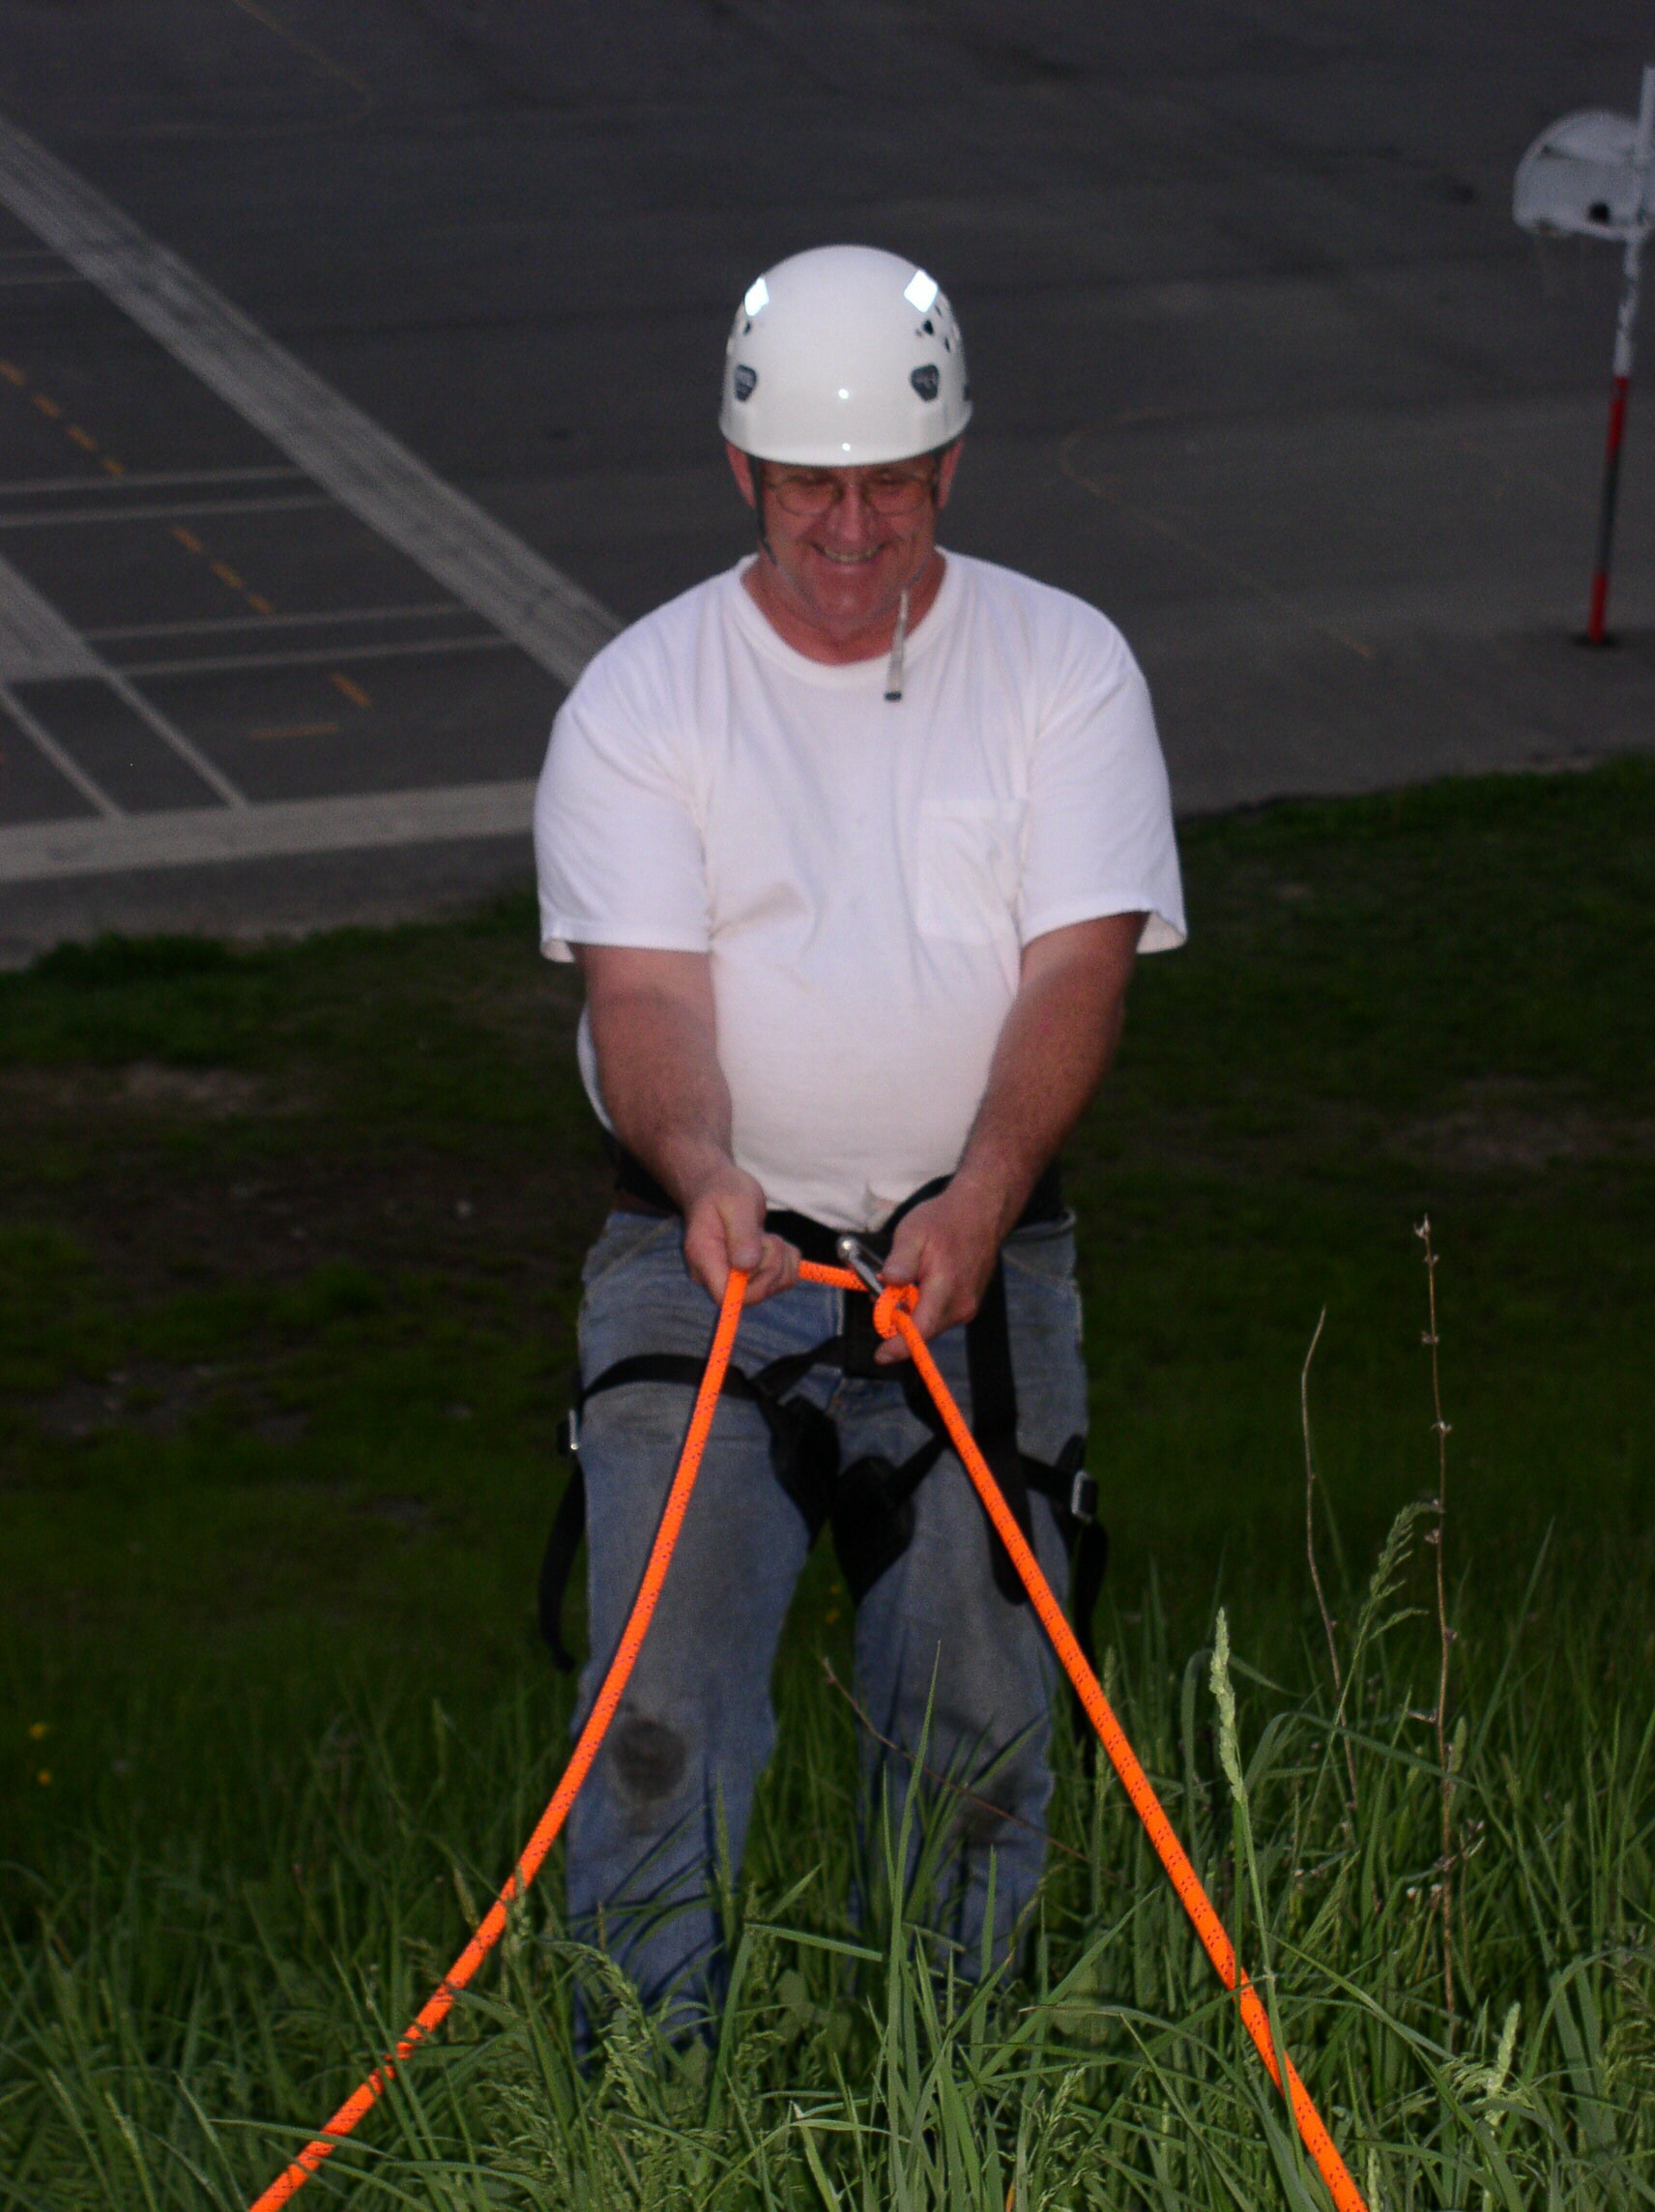 05-31-04  Training - Rope Rescue